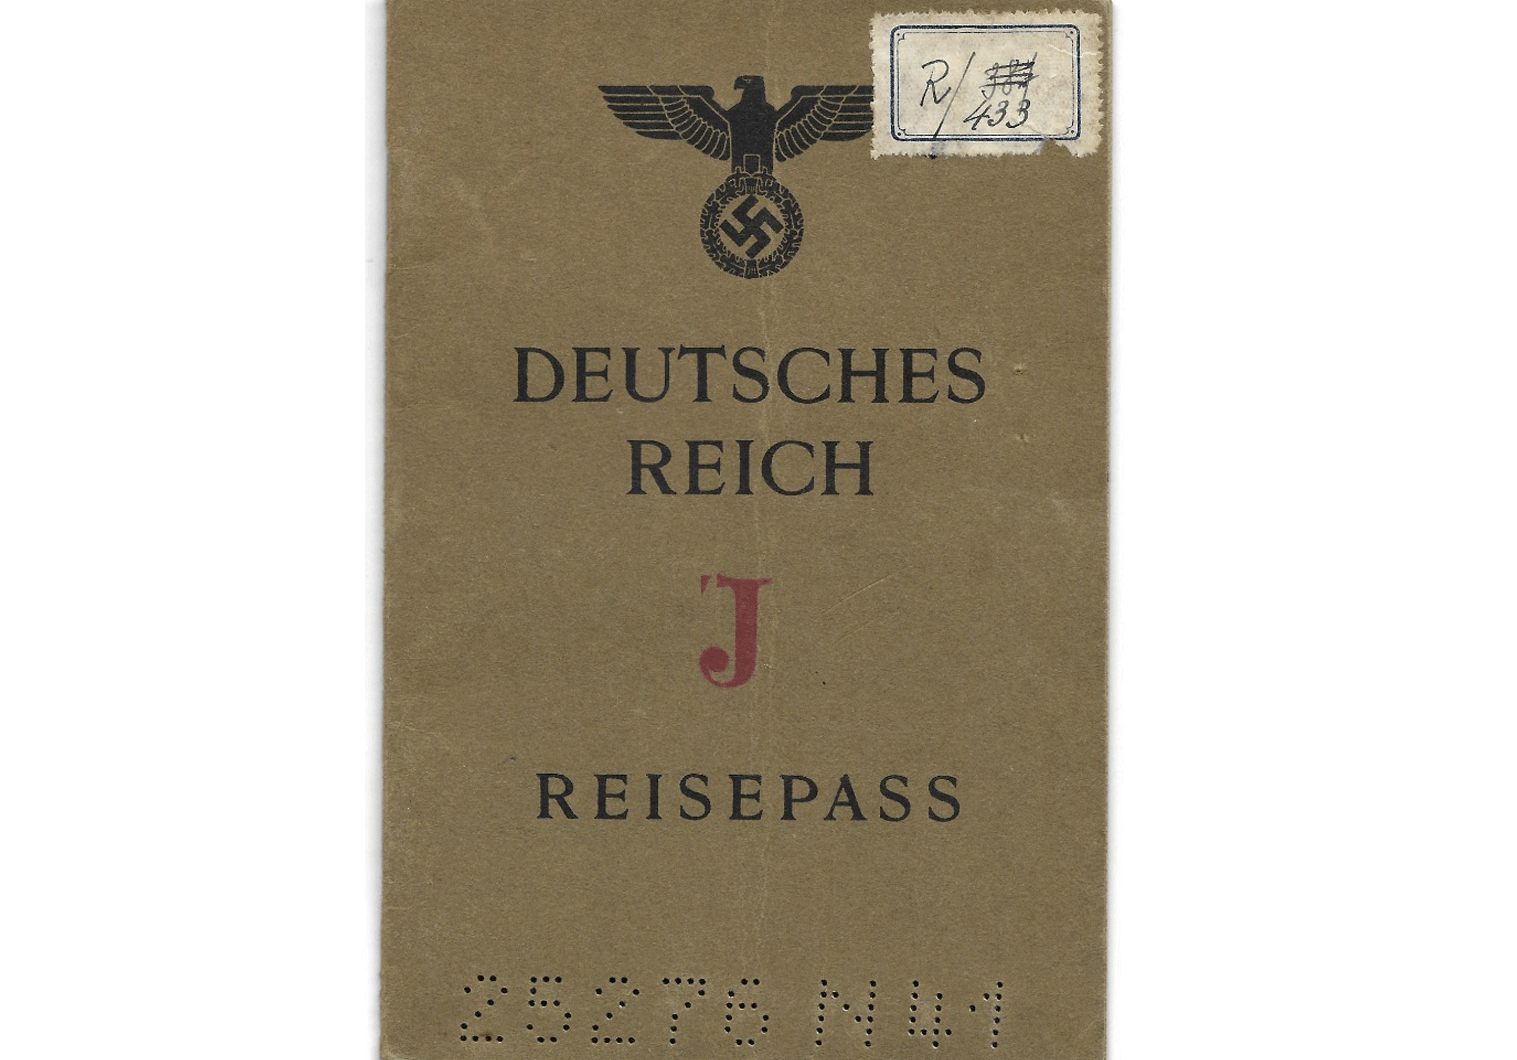 Double J stamped German passport